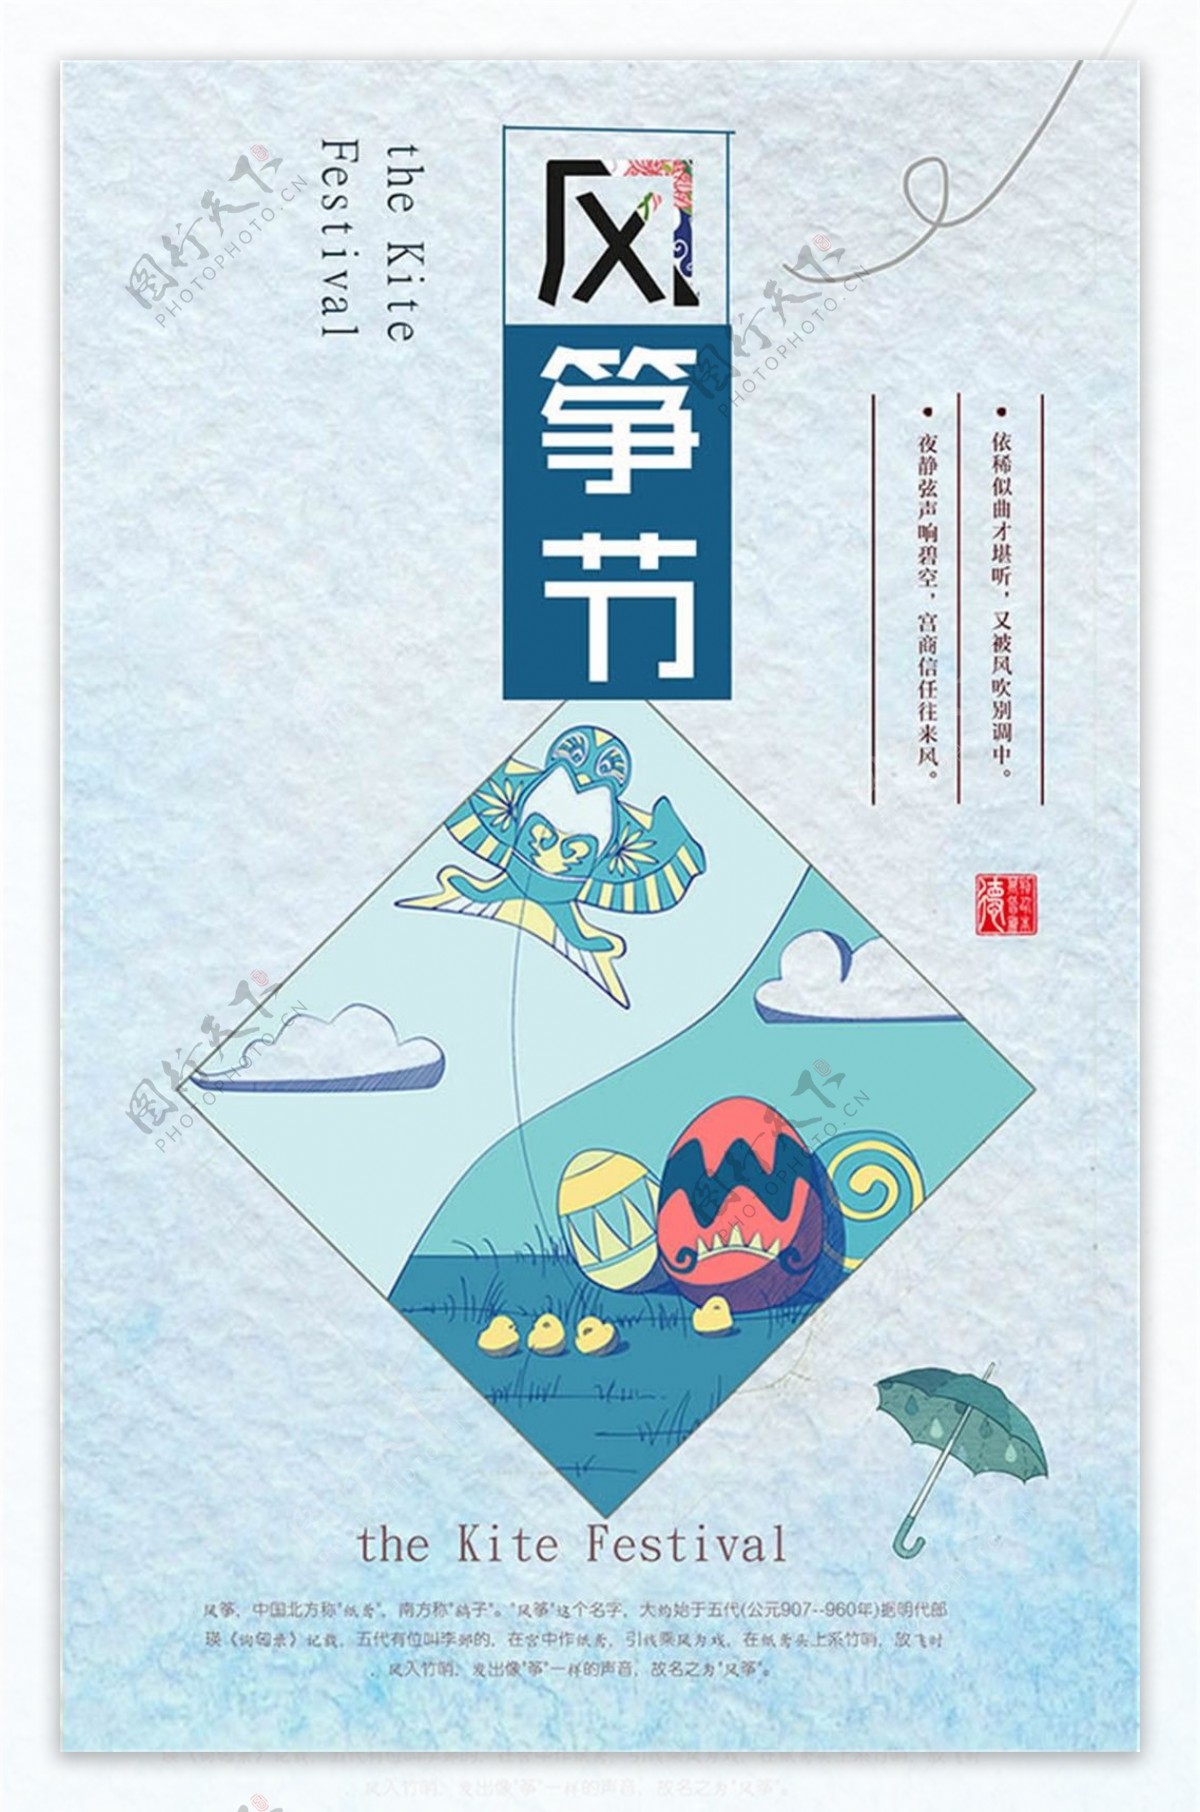 简约时尚设计风筝节海报psd源文件